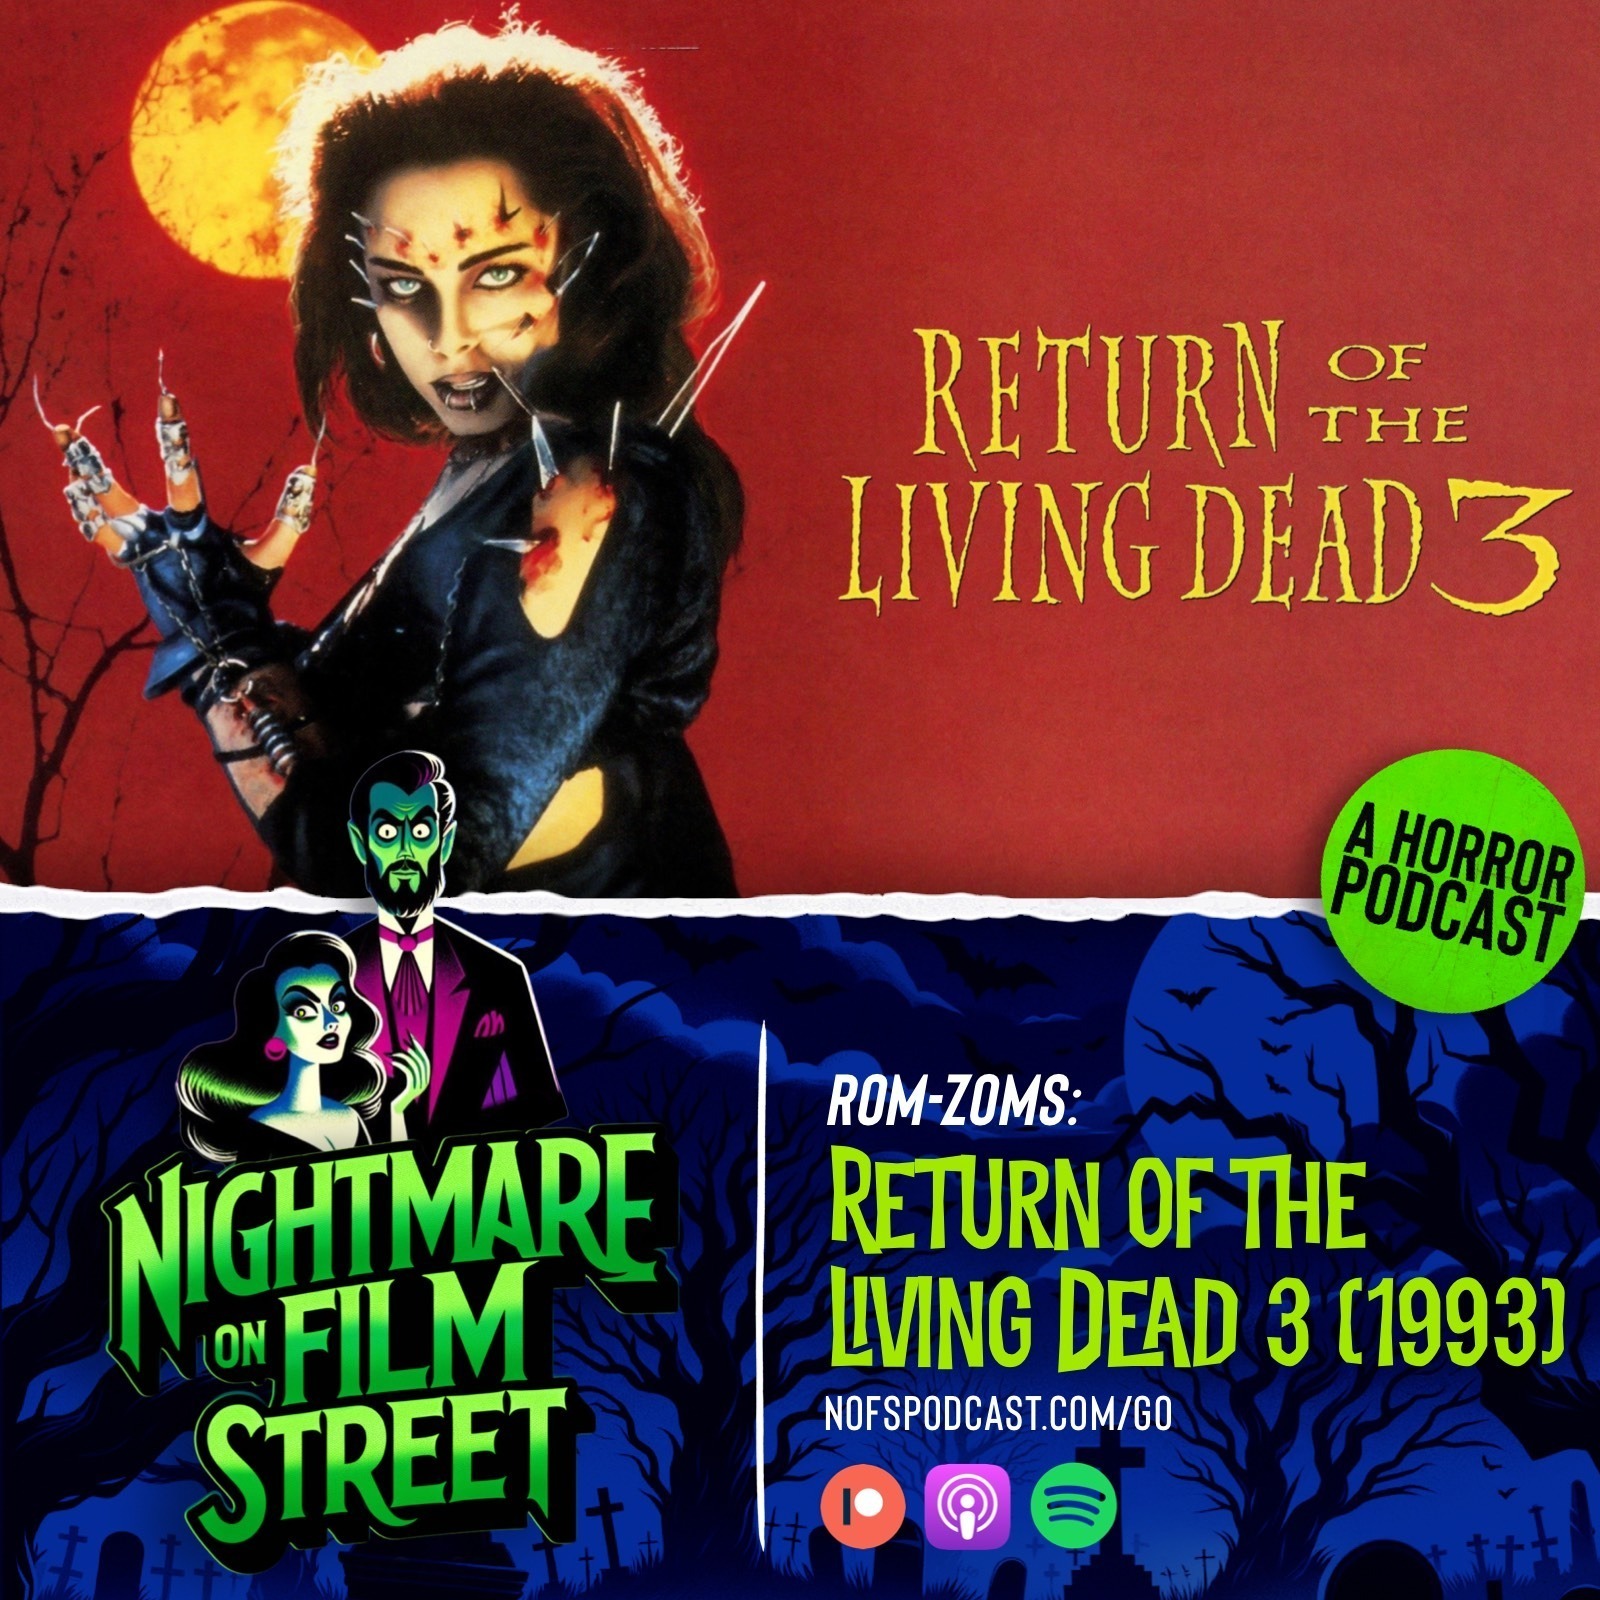 Rom-Zoms: Return of The Living Dead 3 (1993)